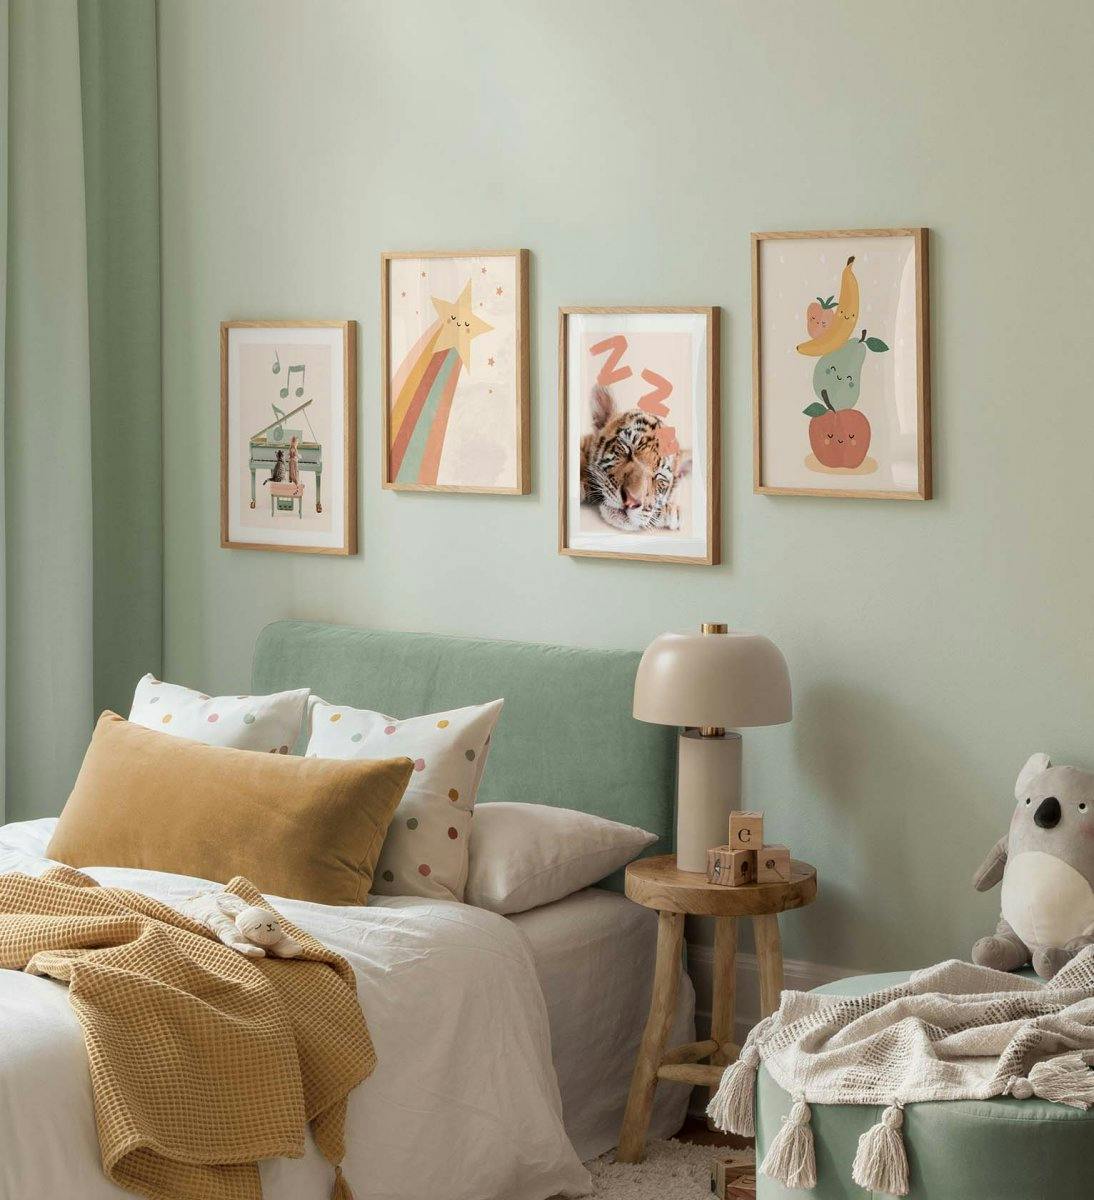 Galeriewand für das Kinderzimmer mit fröhlichen Drucken von Obstillustrationen und Tierplakaten in Pastellfarben mit Eichenrahme